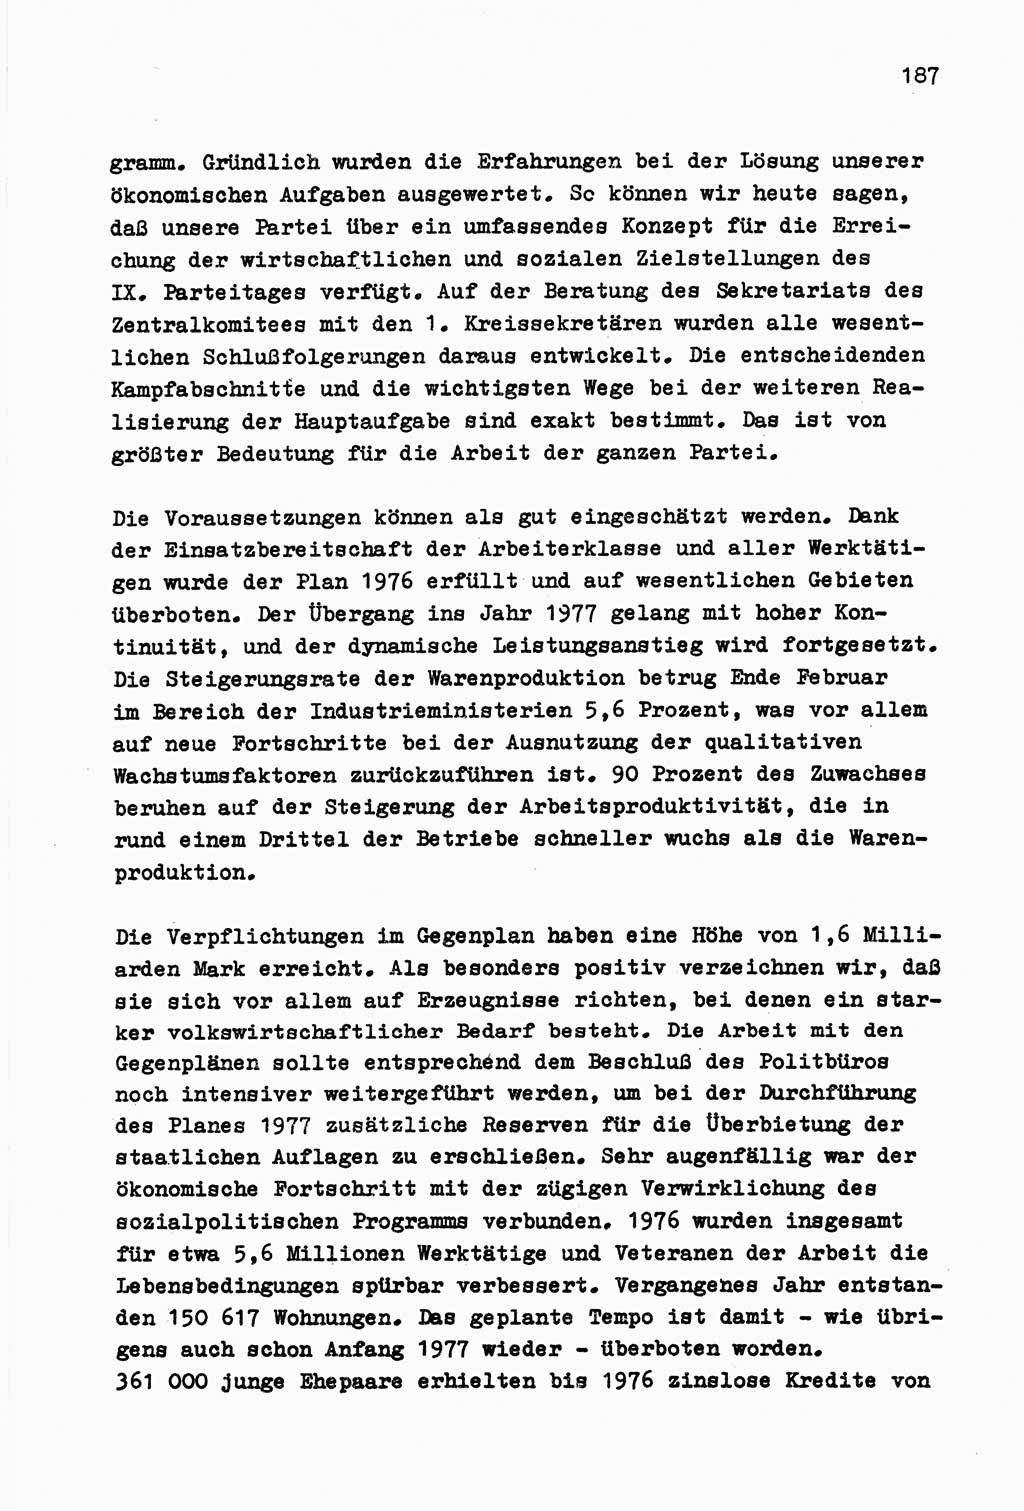 Zu Fragen der Parteiarbeit [Sozialistische Einheitspartei Deutschlands (SED) Deutsche Demokratische Republik (DDR)] 1979, Seite 187 (Fr. PA SED DDR 1979, S. 187)